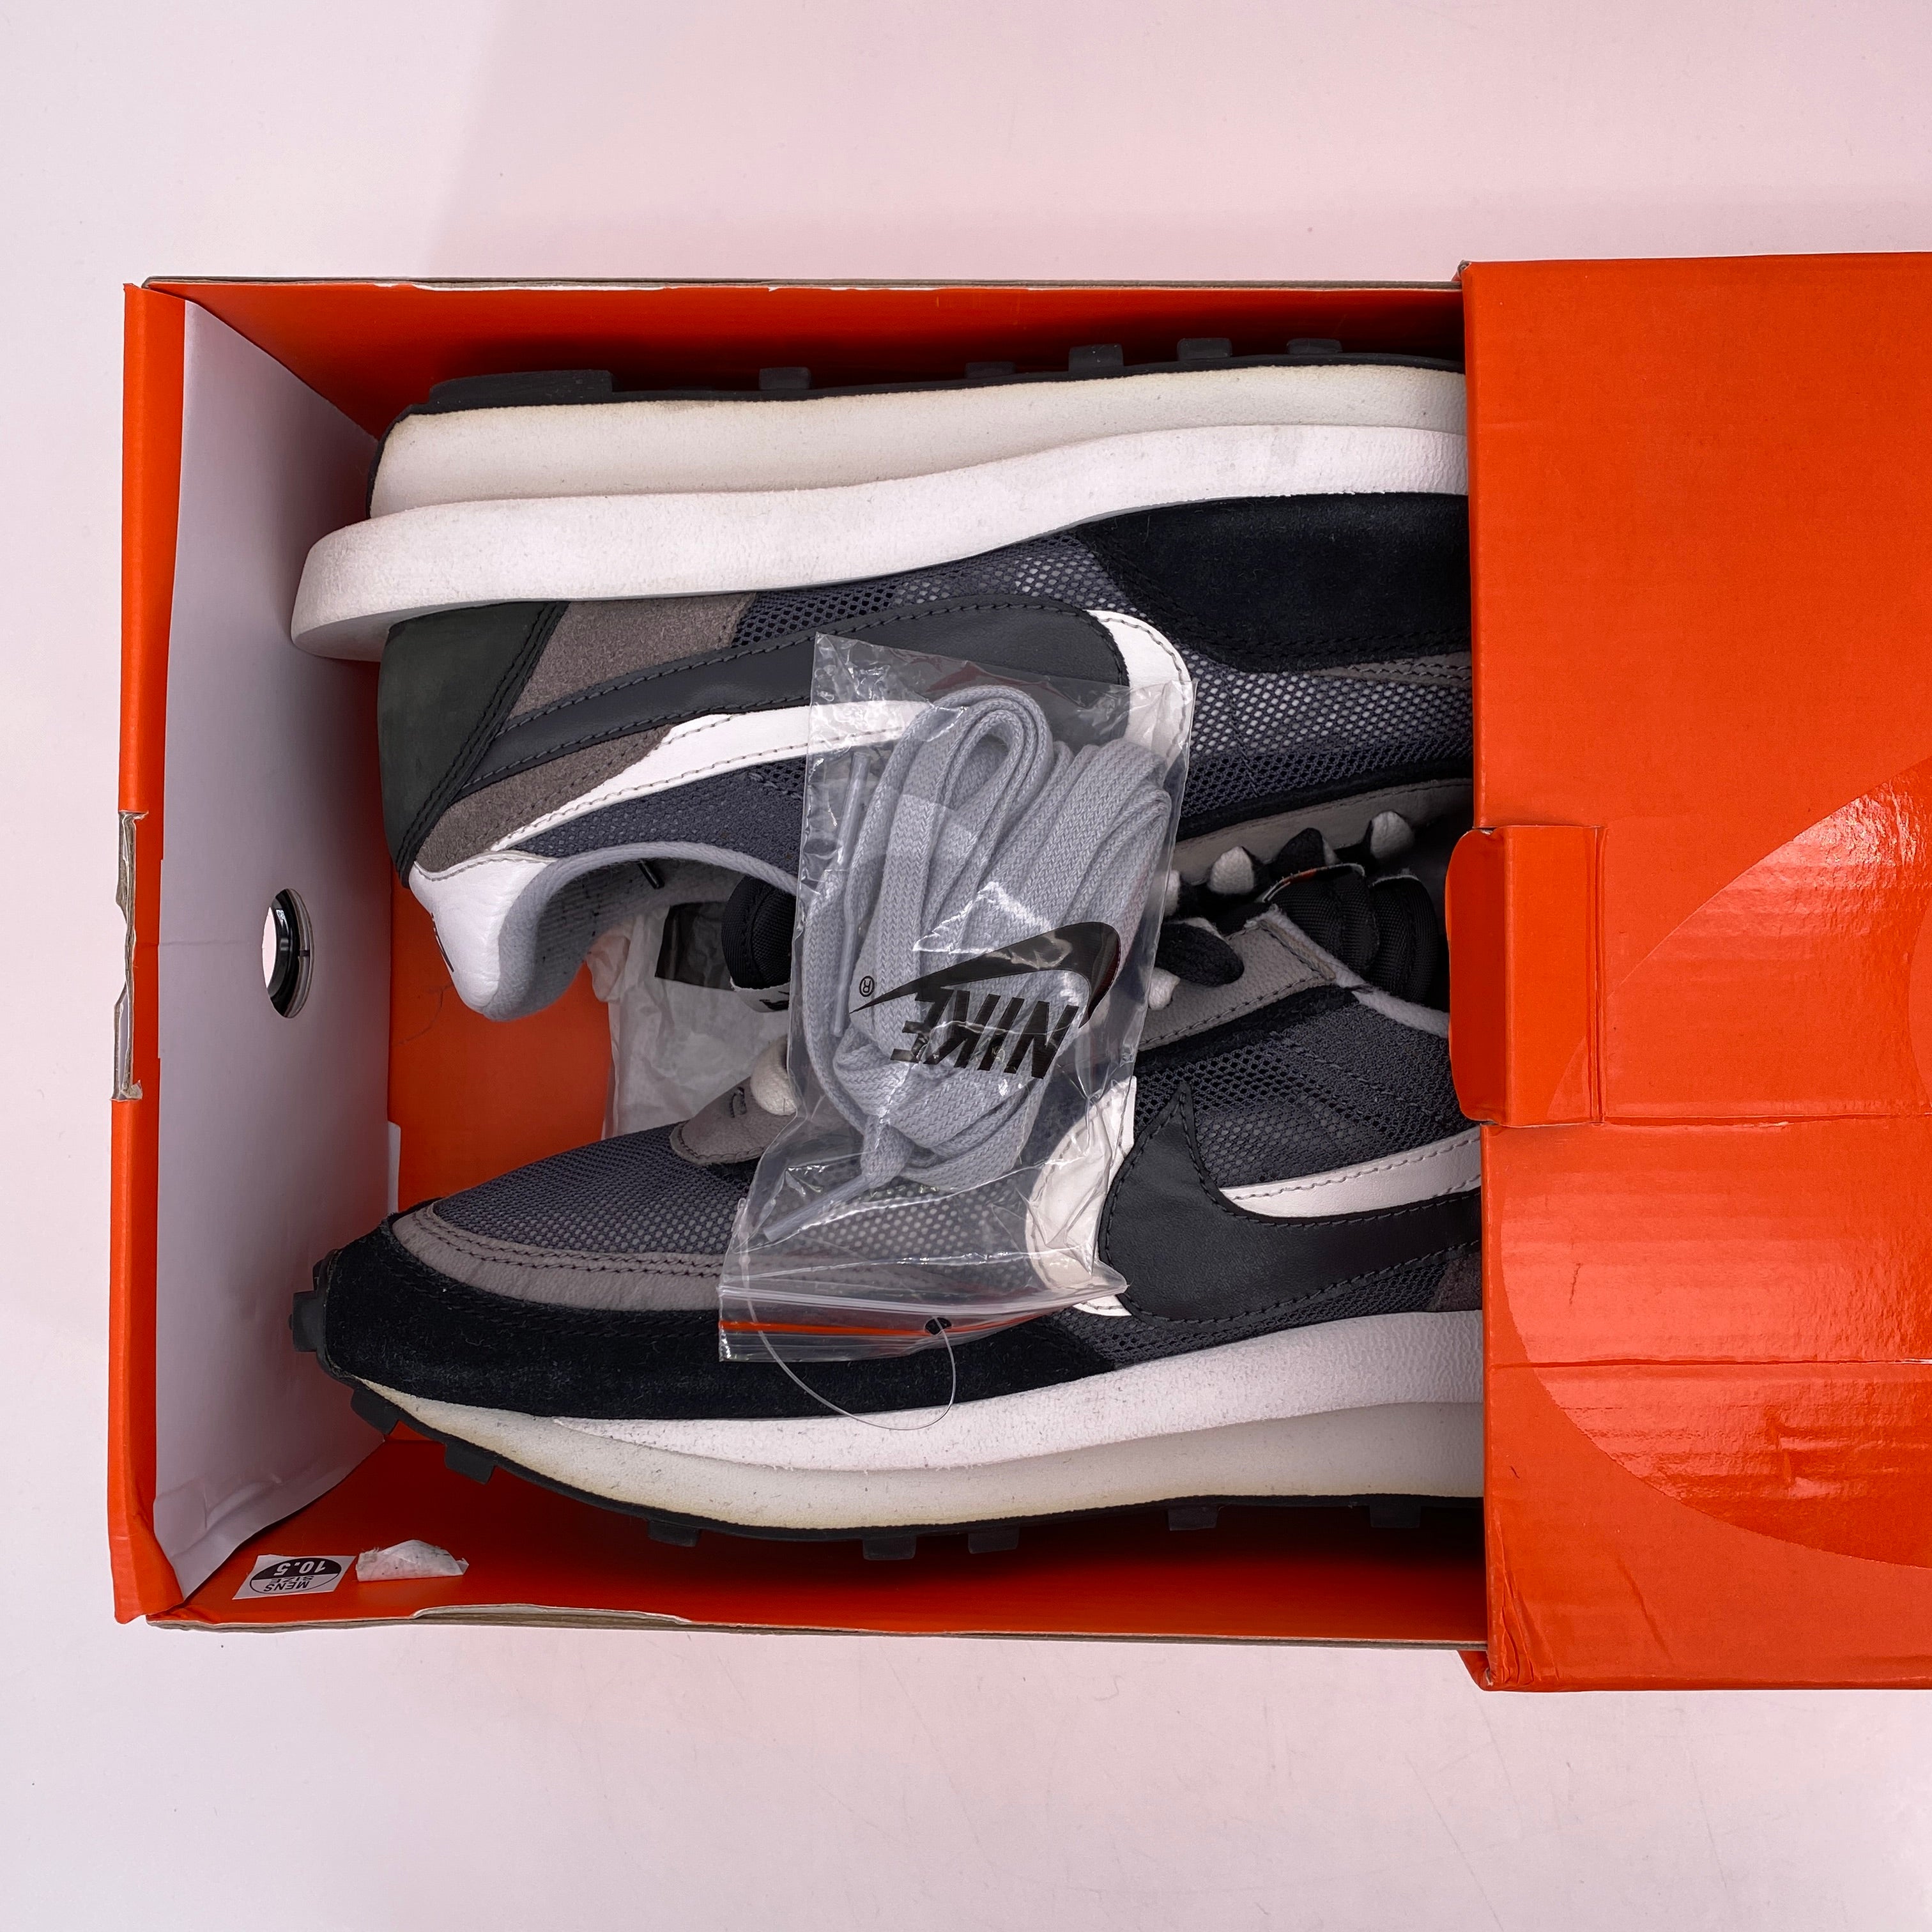 Nike LD WAFFLE / Sacai &quot;Sacai Black&quot; 2019 Used Size 10.5